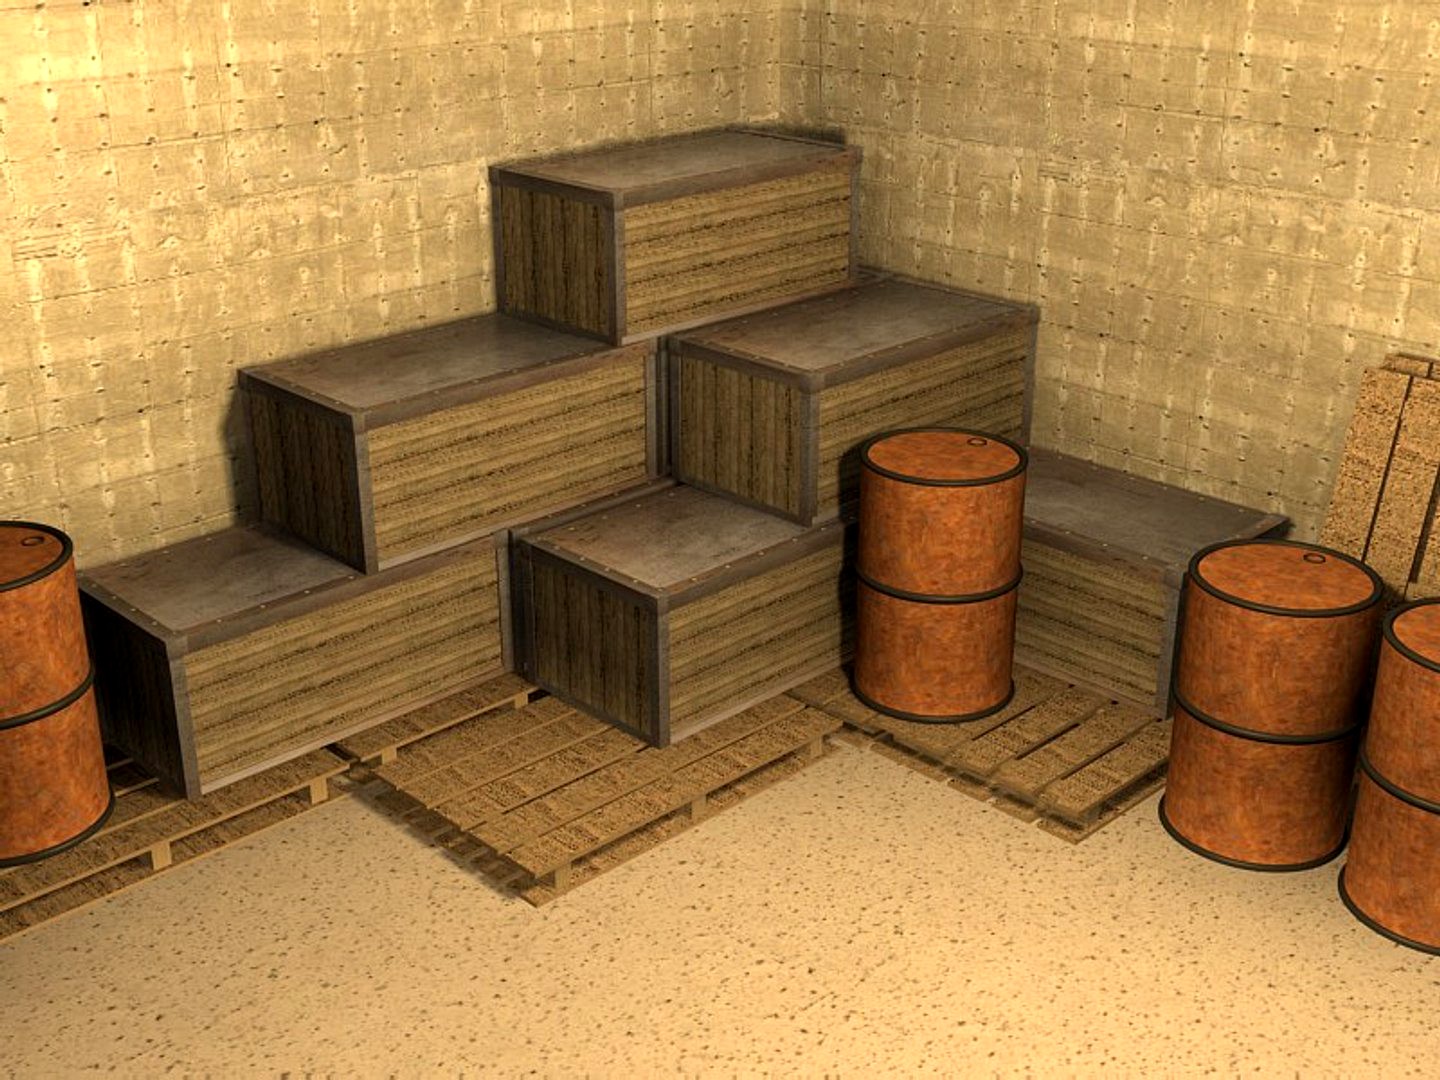 crates